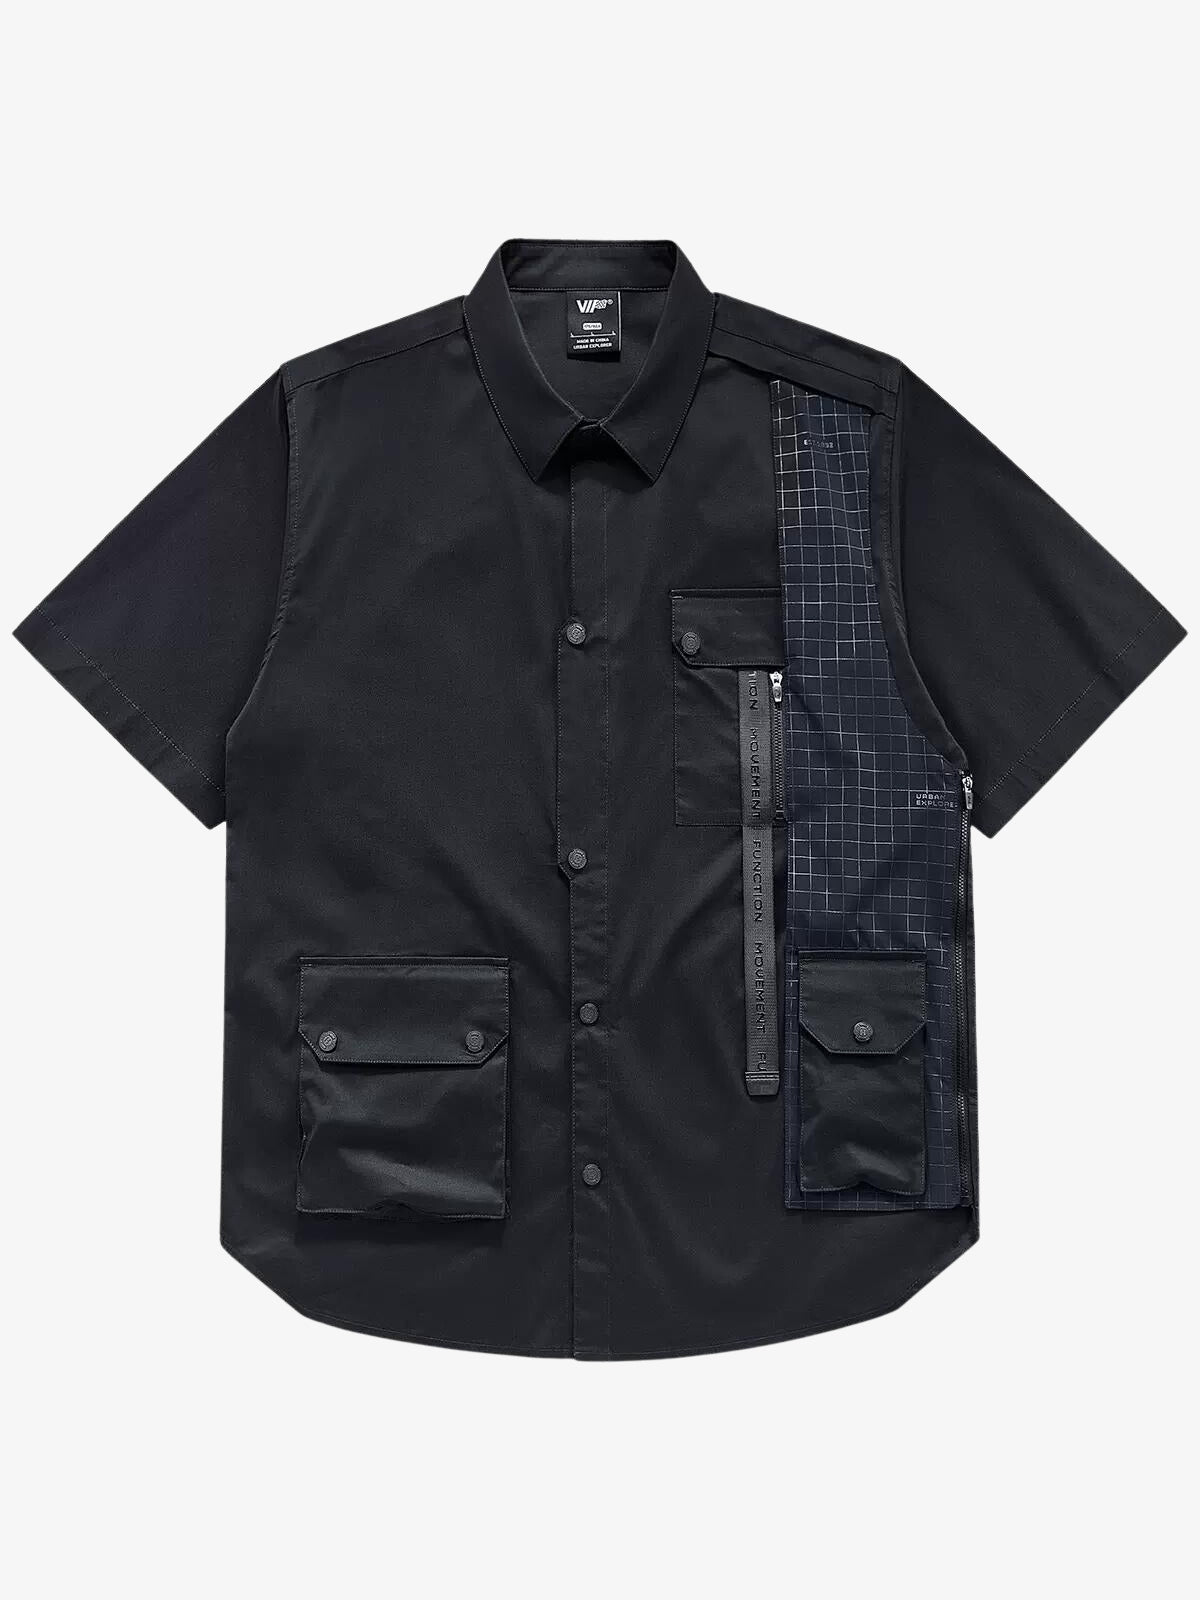 Tactical Cyberpunk Splicing Zipper Shirt